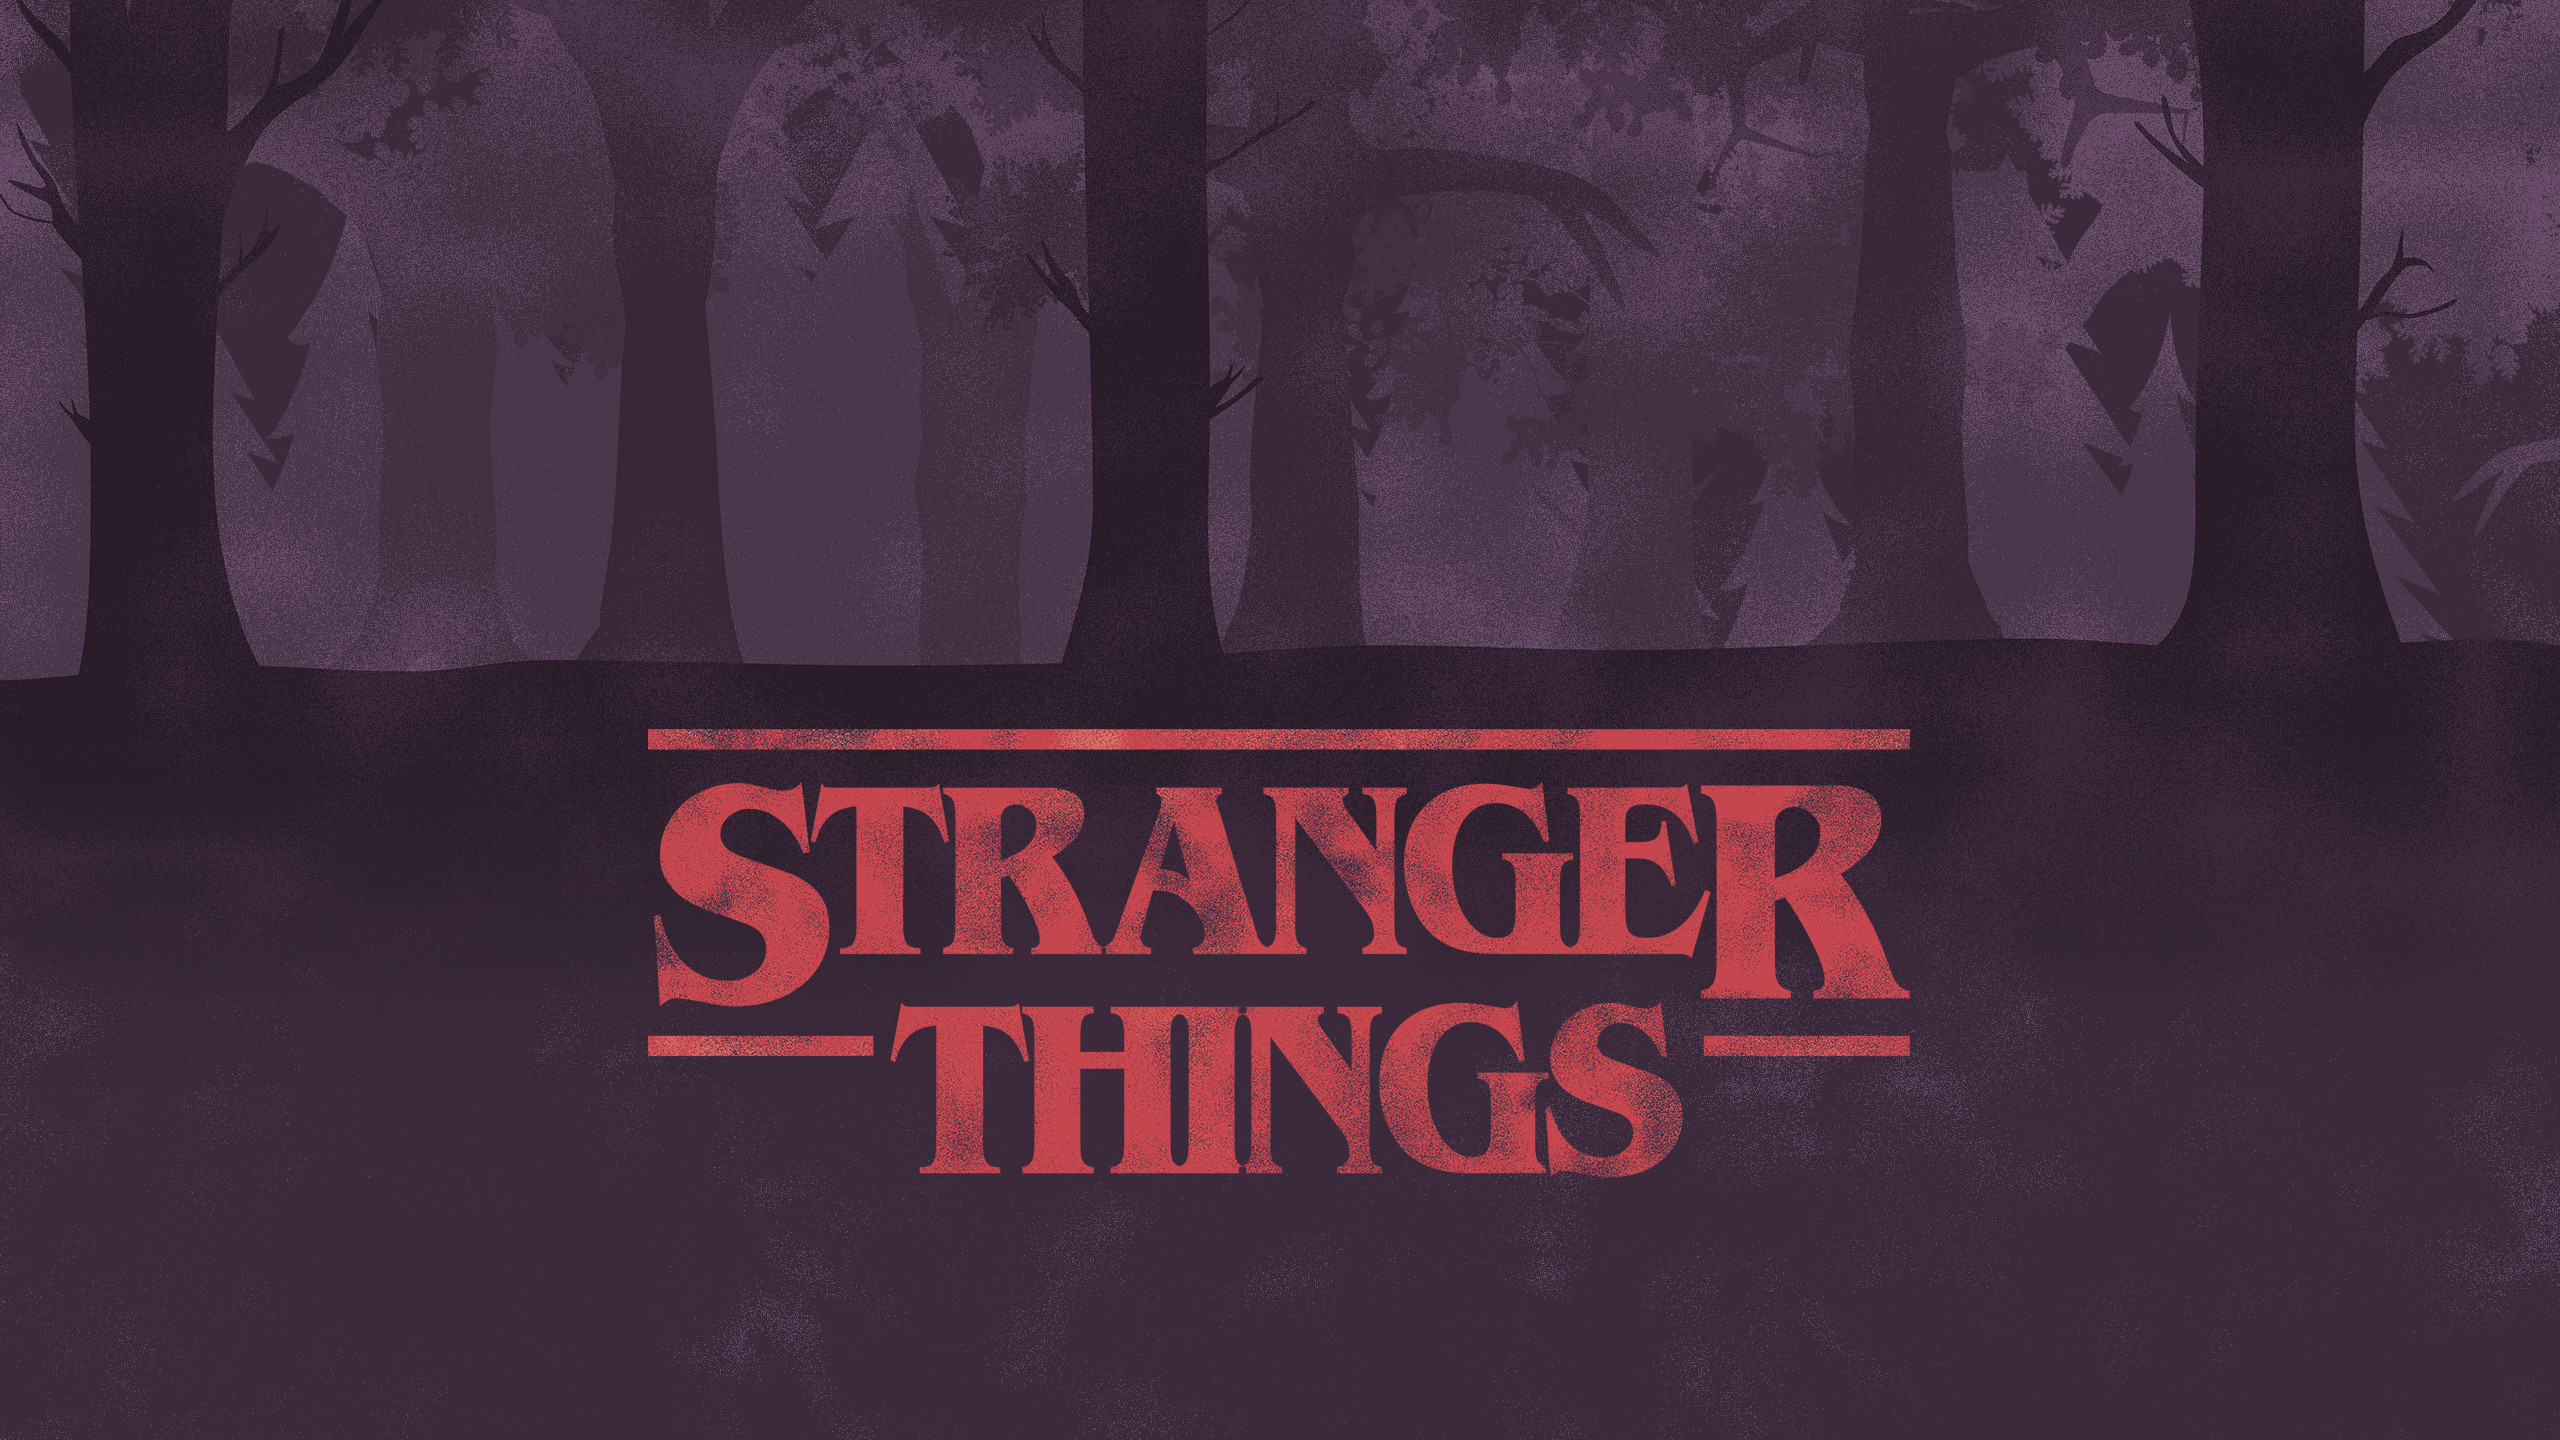 Stranger Things Wallpapers, For Desktop, Phone And - Stranger Things Computer Background - HD Wallpaper 